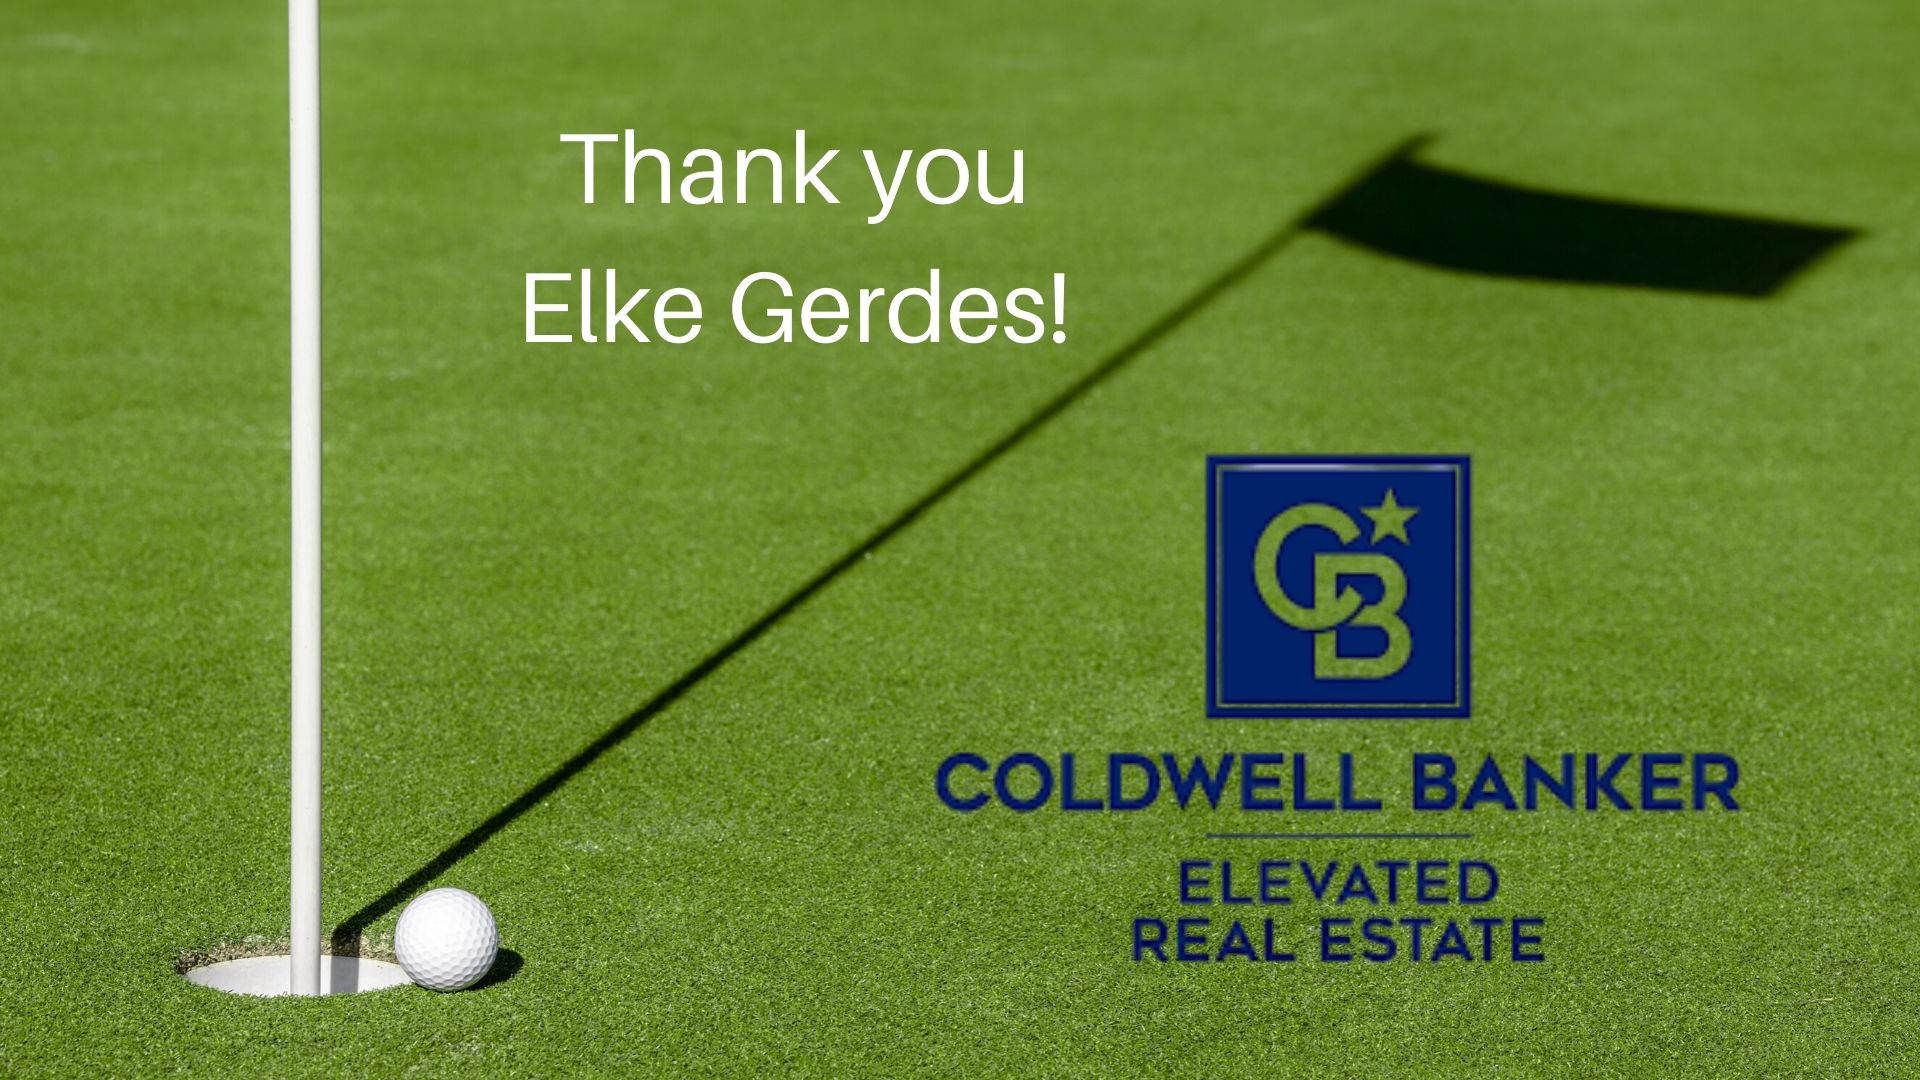 Elevated Real Estate / Coldwell Banker - Elke Gerdes